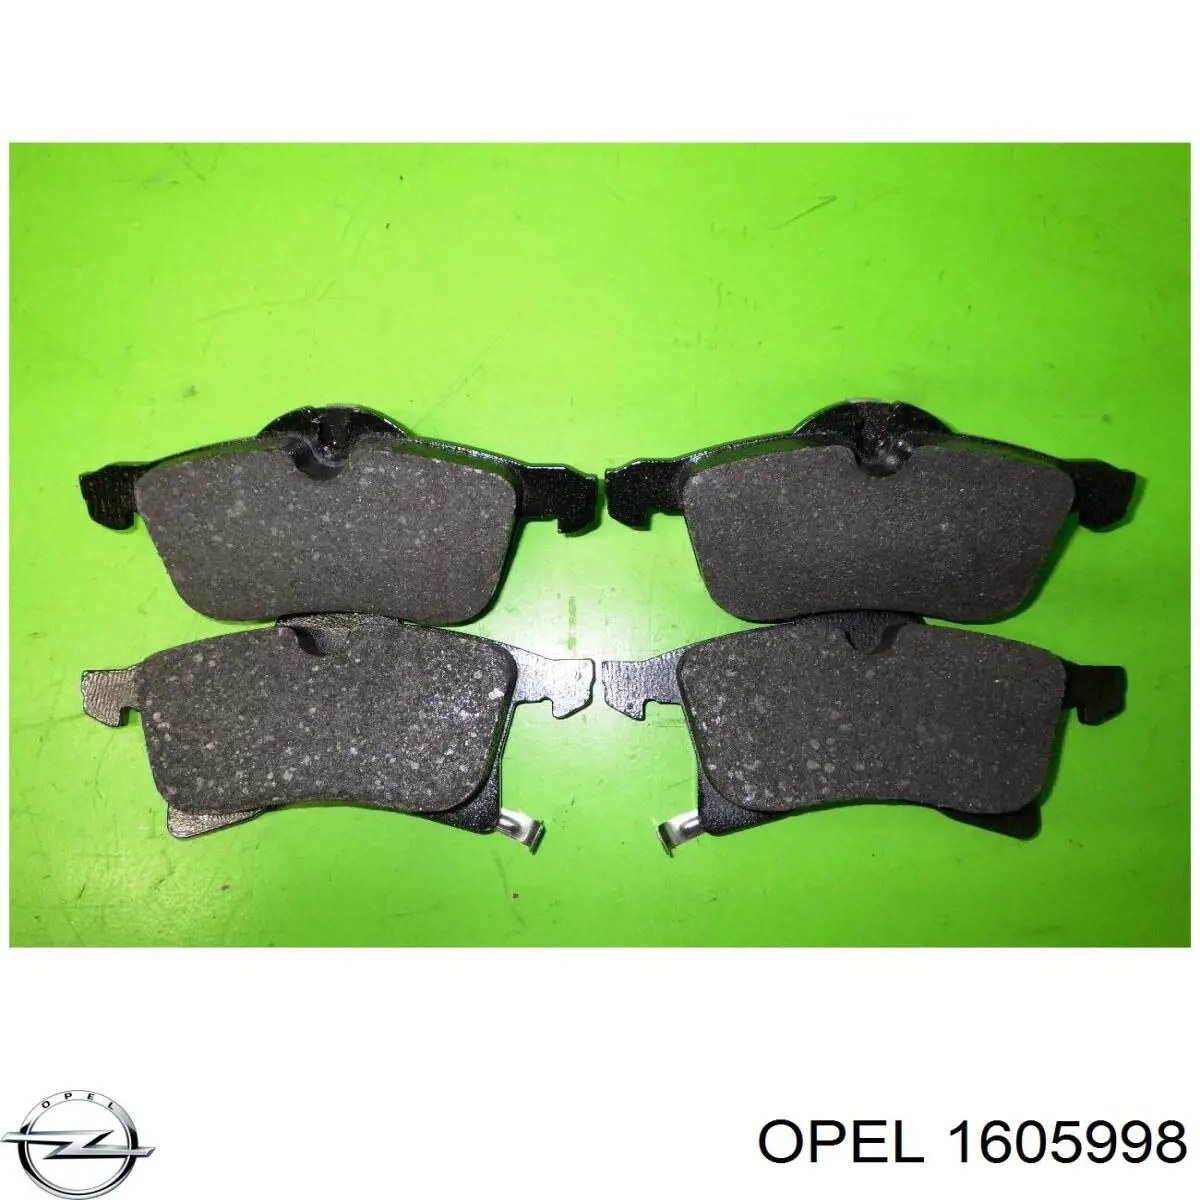 1605998 Opel колодки тормозные передние дисковые